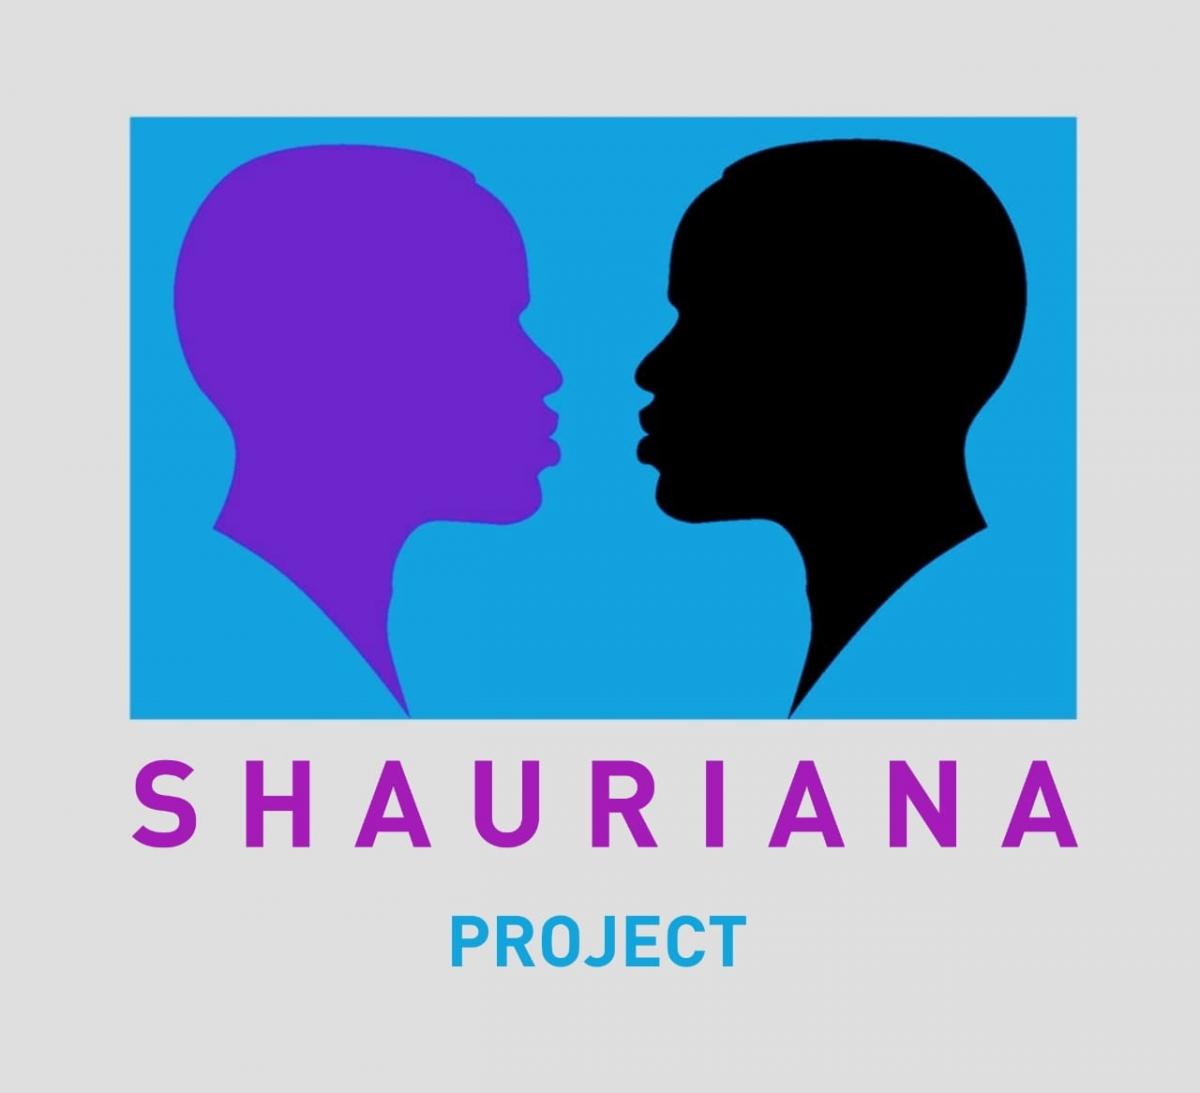 Shauriana Project logo